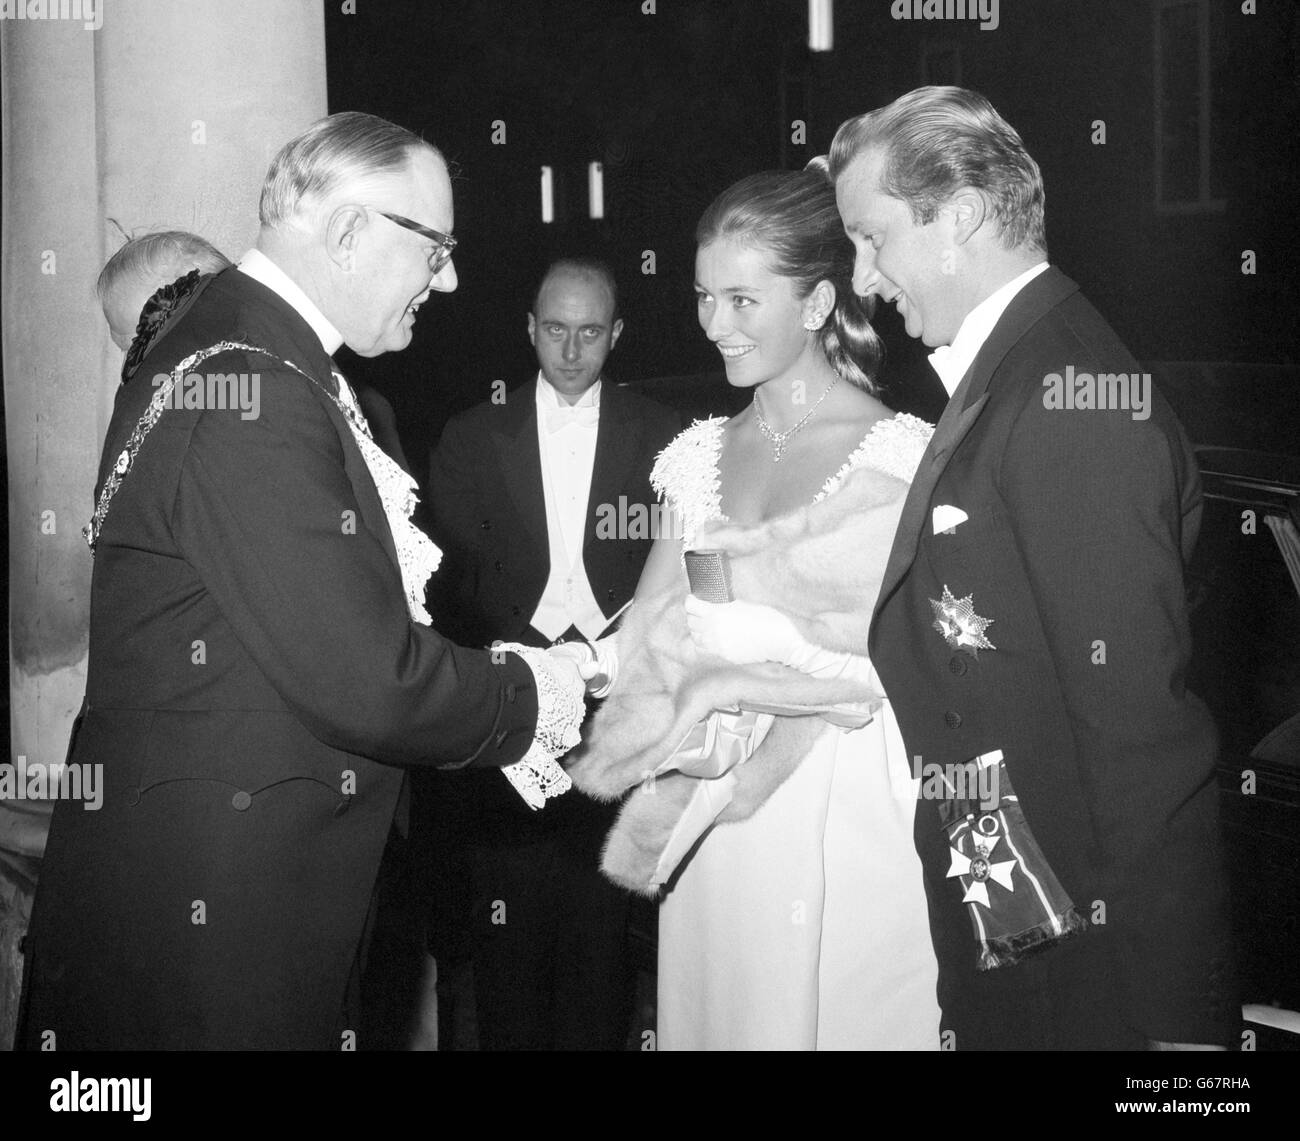 La princesse Paola et son mari le prince Albert de Liège sont accueillis par Sir Lionel Denny, Lord Mayor de Londres, à leur arrivée au Mansion House. Ils assistaient au banquet du 75e anniversaire de la Chambre de commerce belge en Grande-Bretagne. Banque D'Images